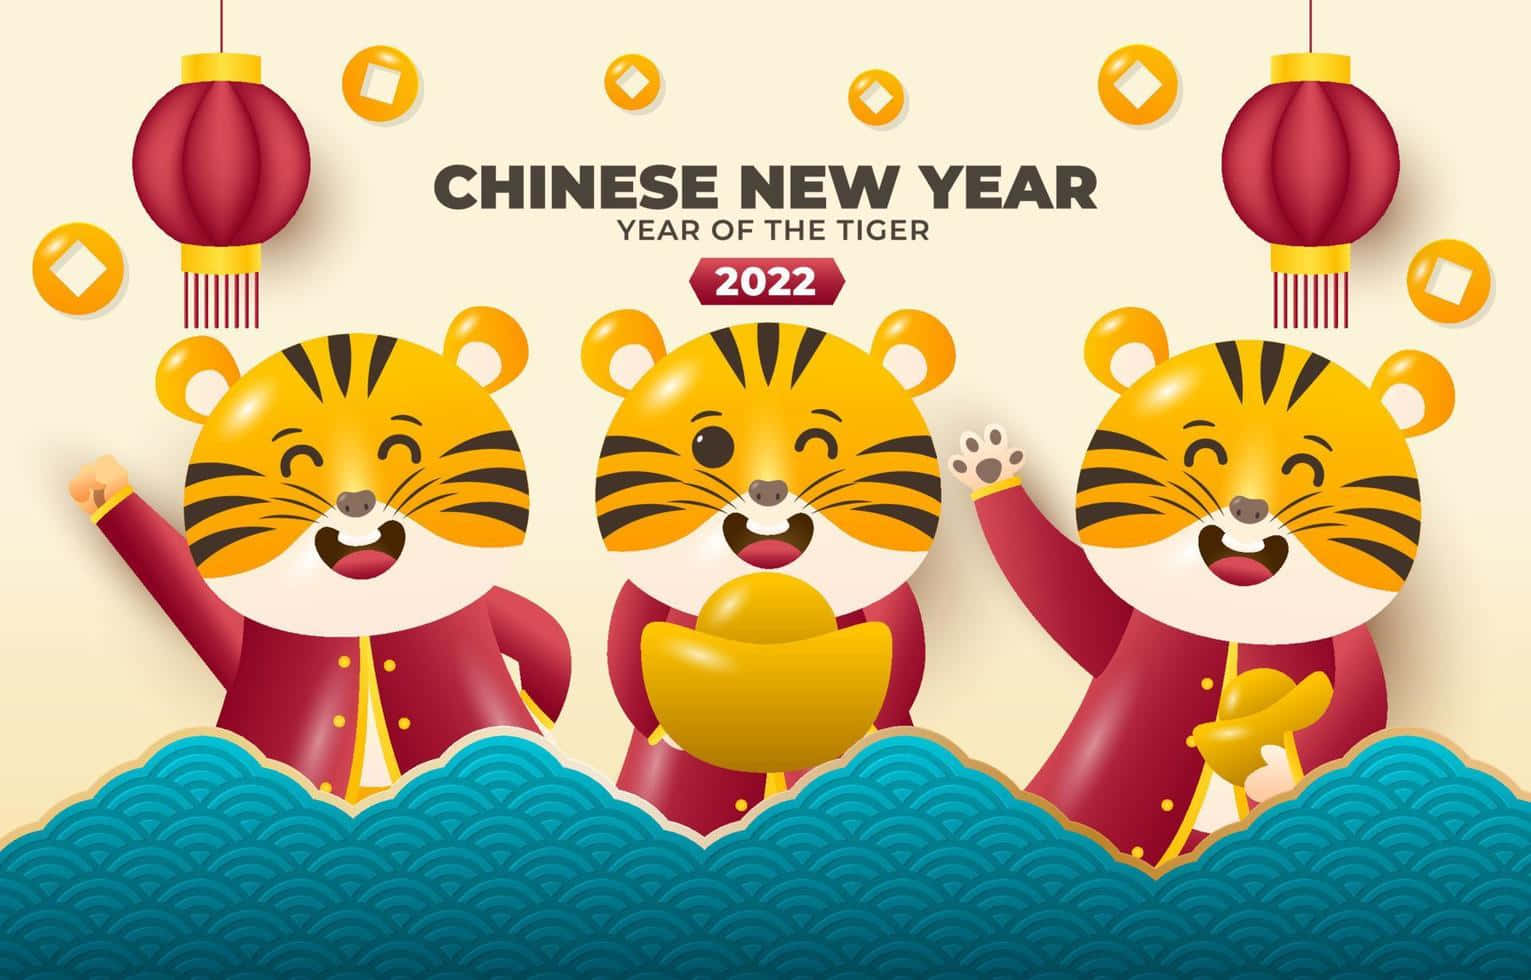 Bienvenido/aal Año Nuevo Chino 2022